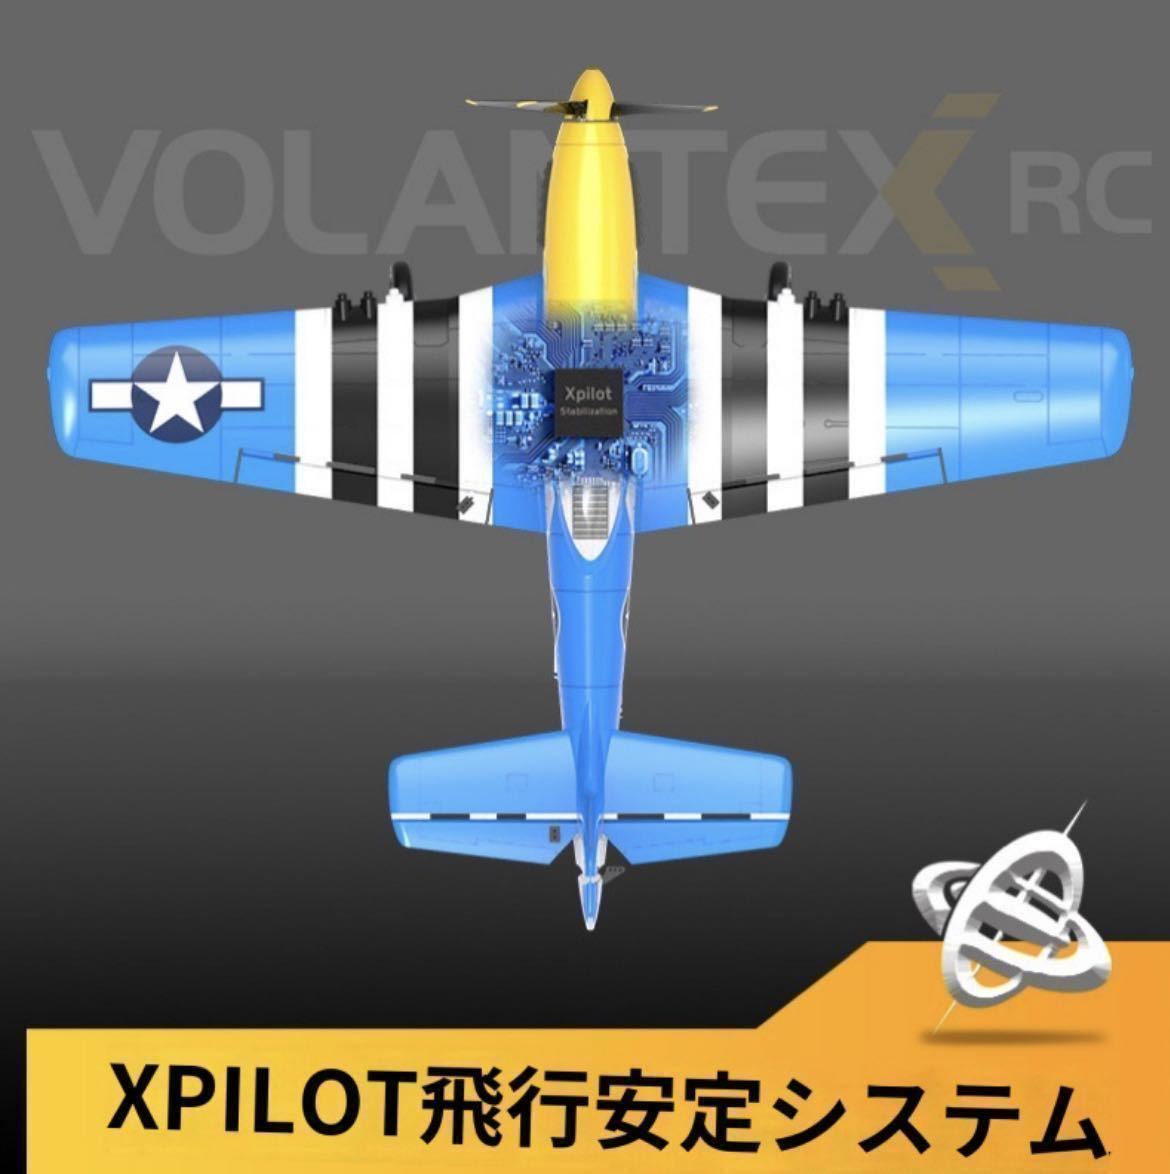 ★バッテリー*3 NEW Volantex EACHINE 最新P-51D V2 P51 マスタング 4CH Xpilotジャイロ　RCラジコン飛行機 Futaba SFHSS OpenTX 400mm RTF_画像8